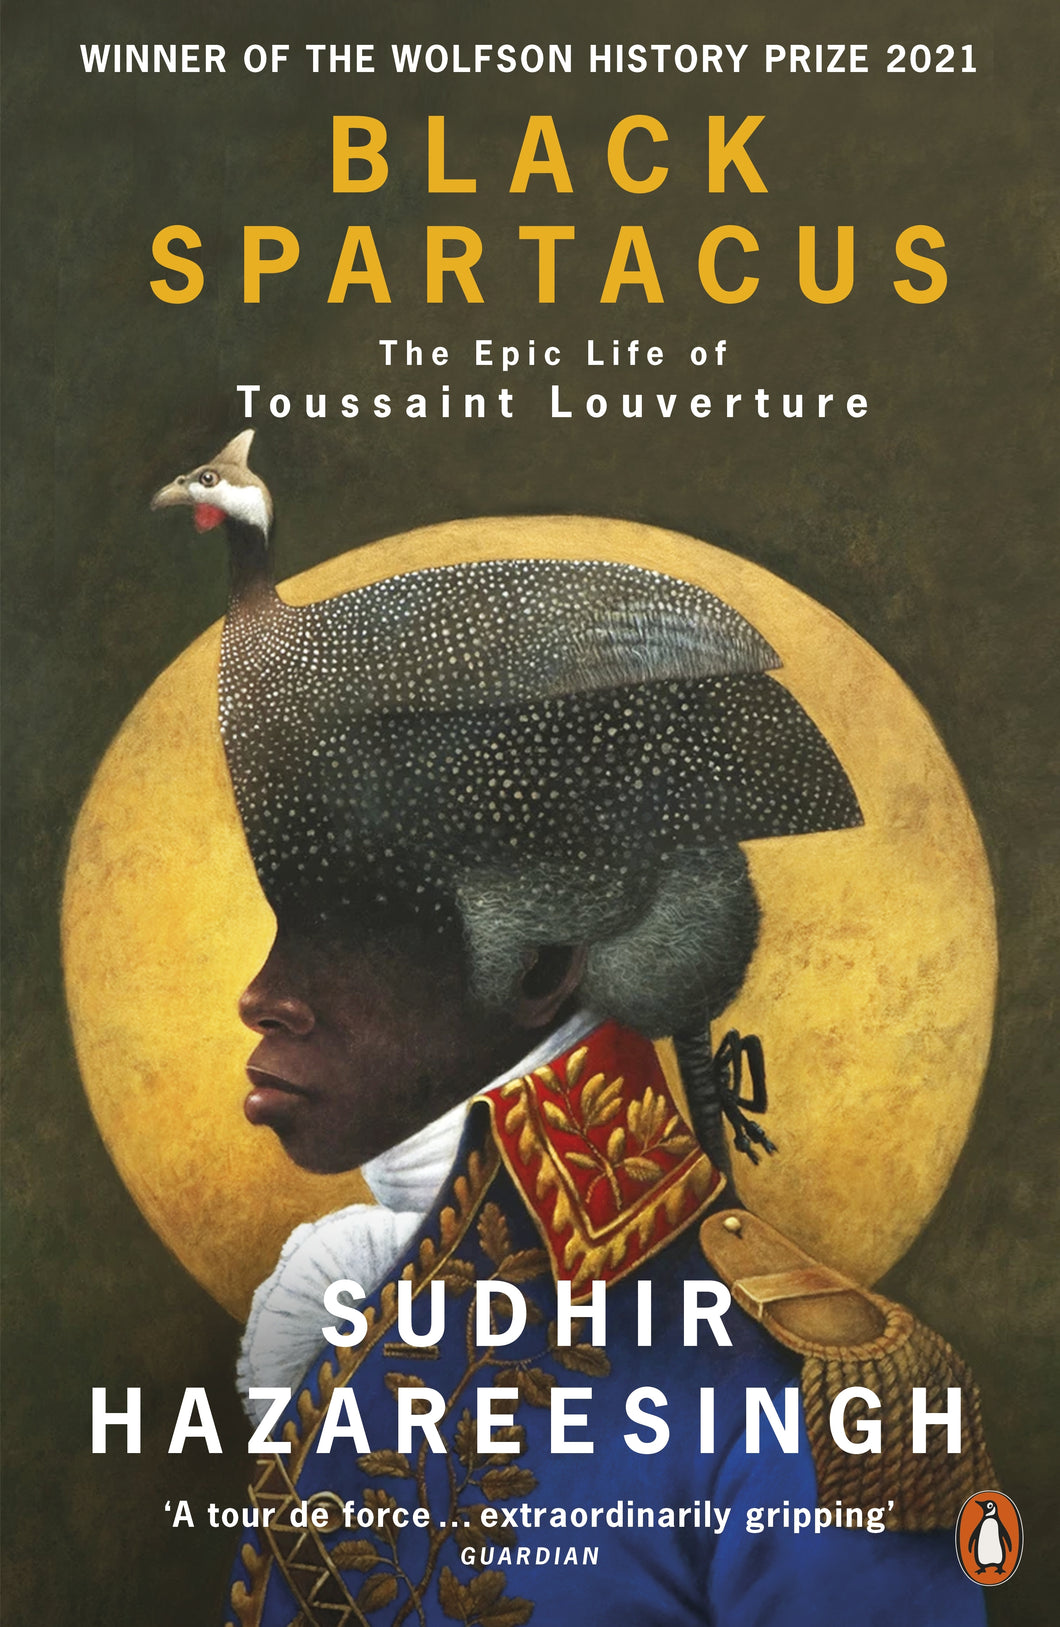 Black Spartacus:
The Epic Life of Toussaint Louverture